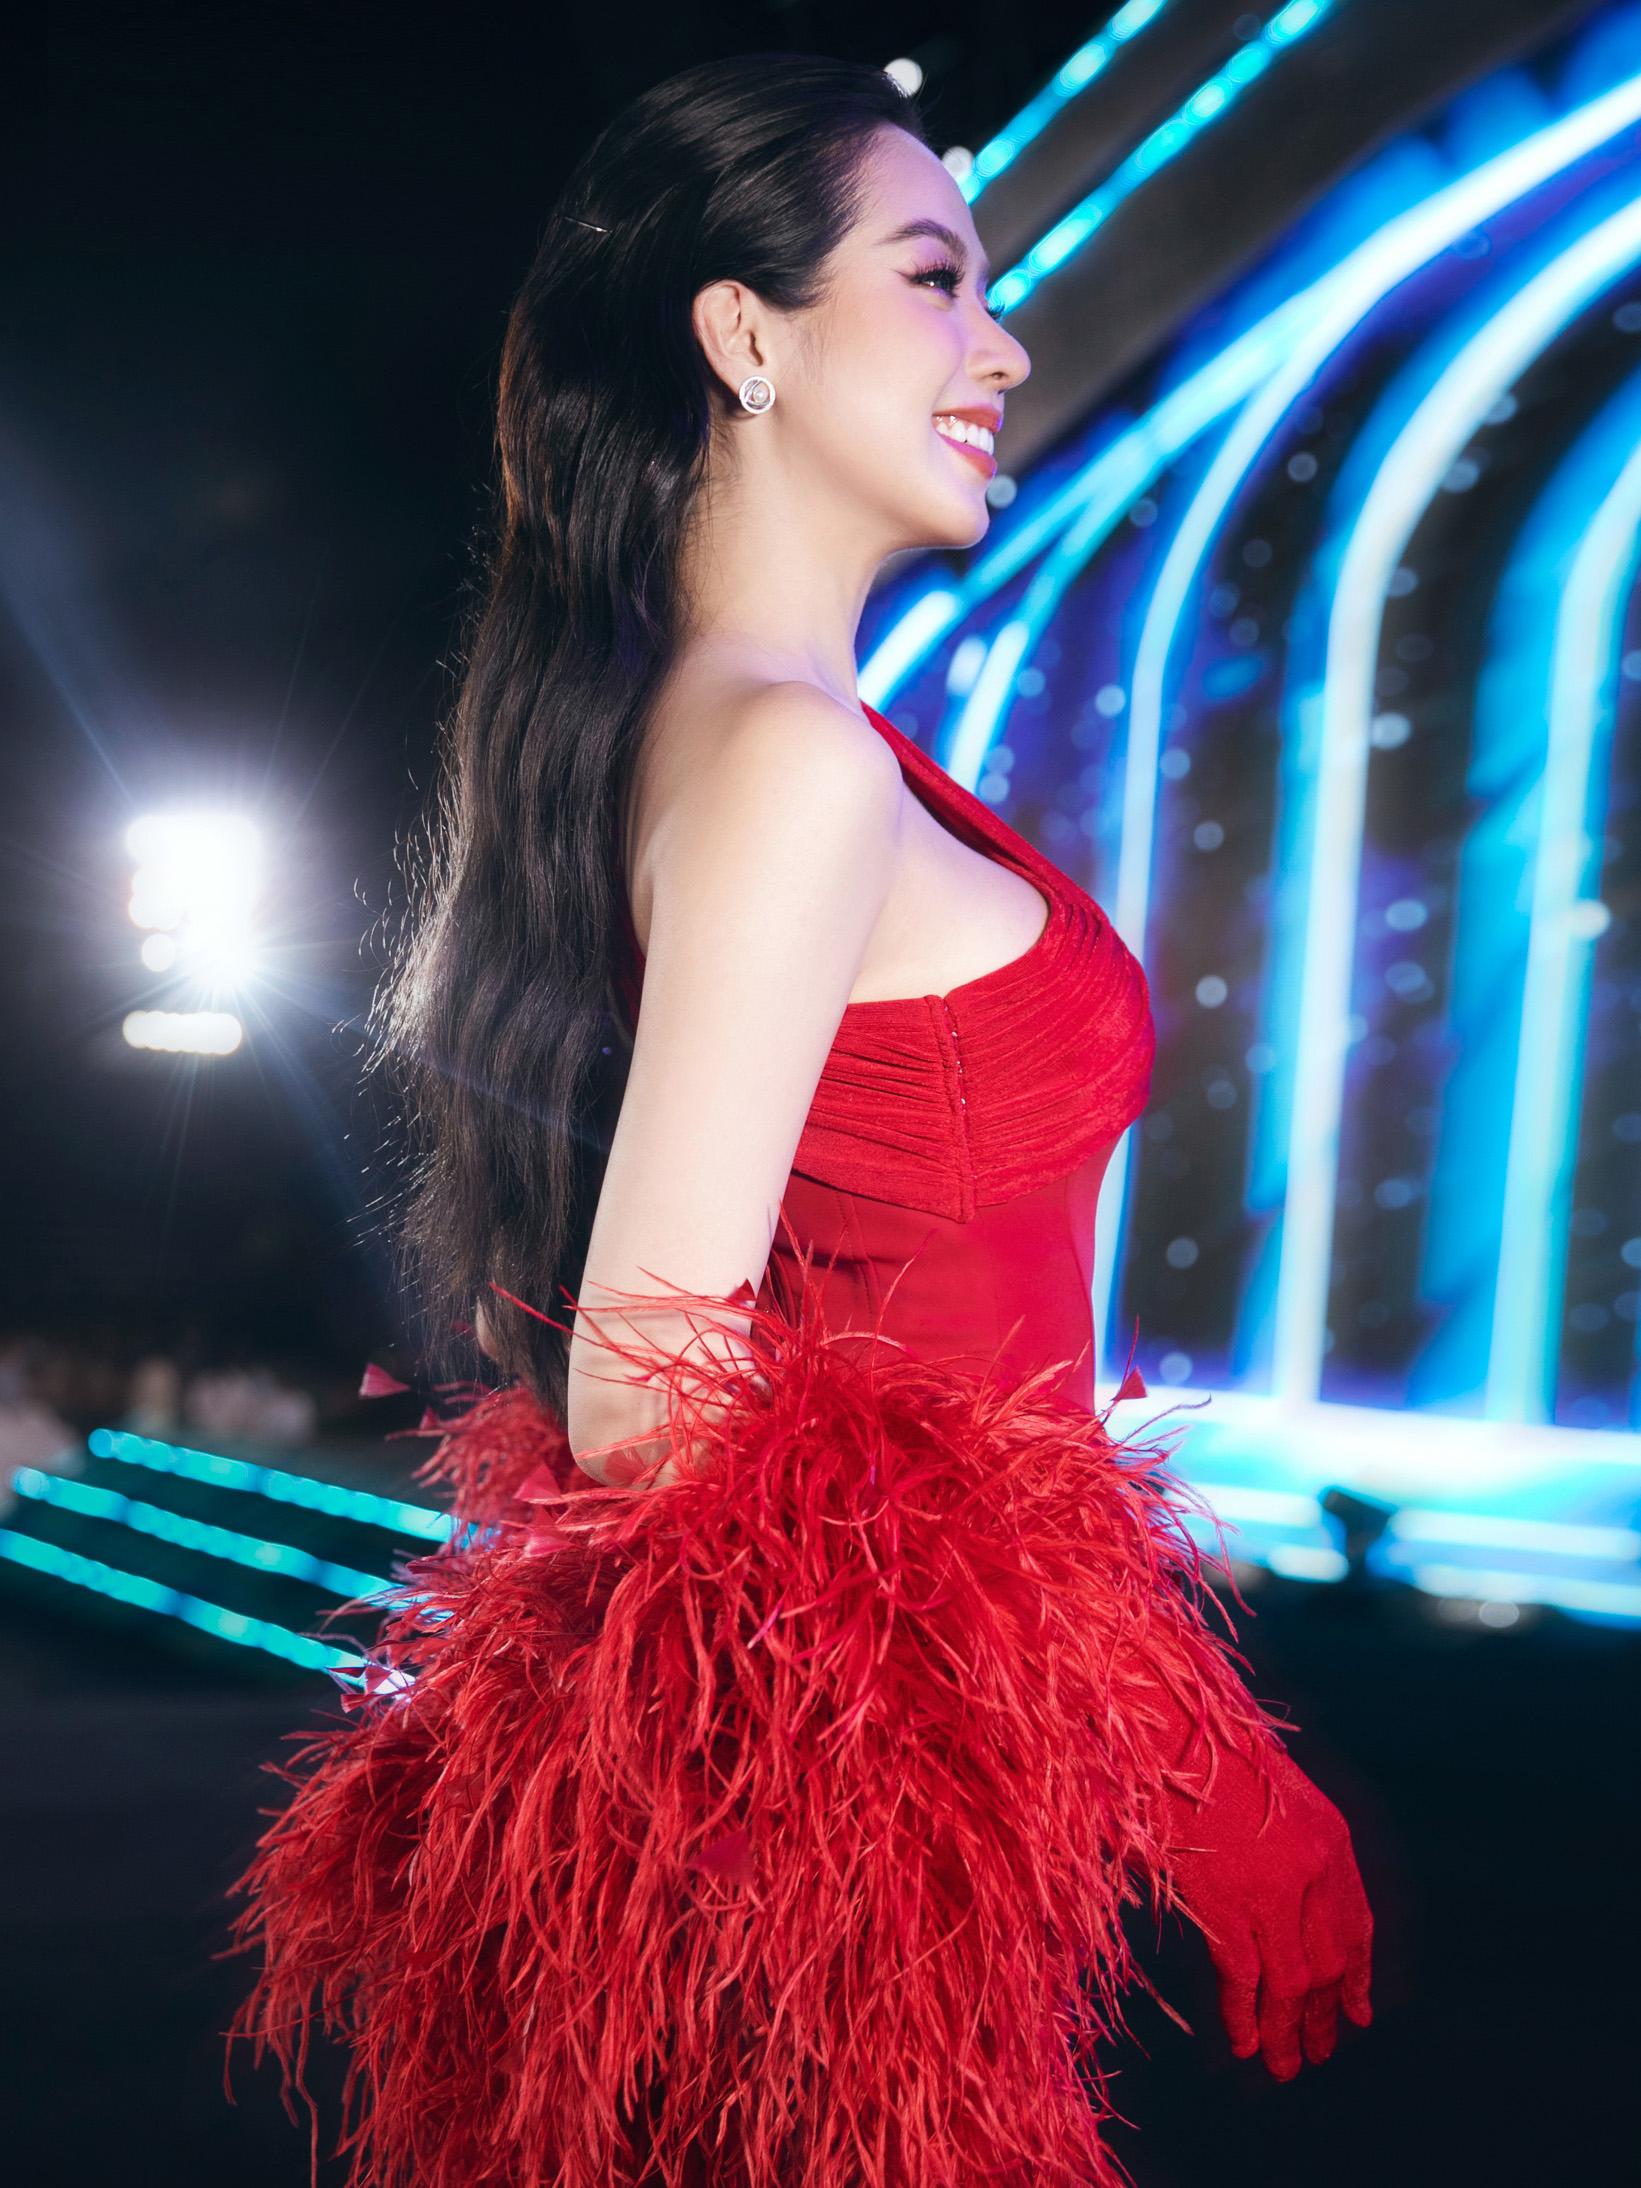 Hoa hậu Thanh Thuỷ nổi bật khi lựa chọn mẫu thiết kế dạ hội tone đỏ quyến rũ, khiến cô nàng trở thành tâm điểm của ống kính truyền thông.  